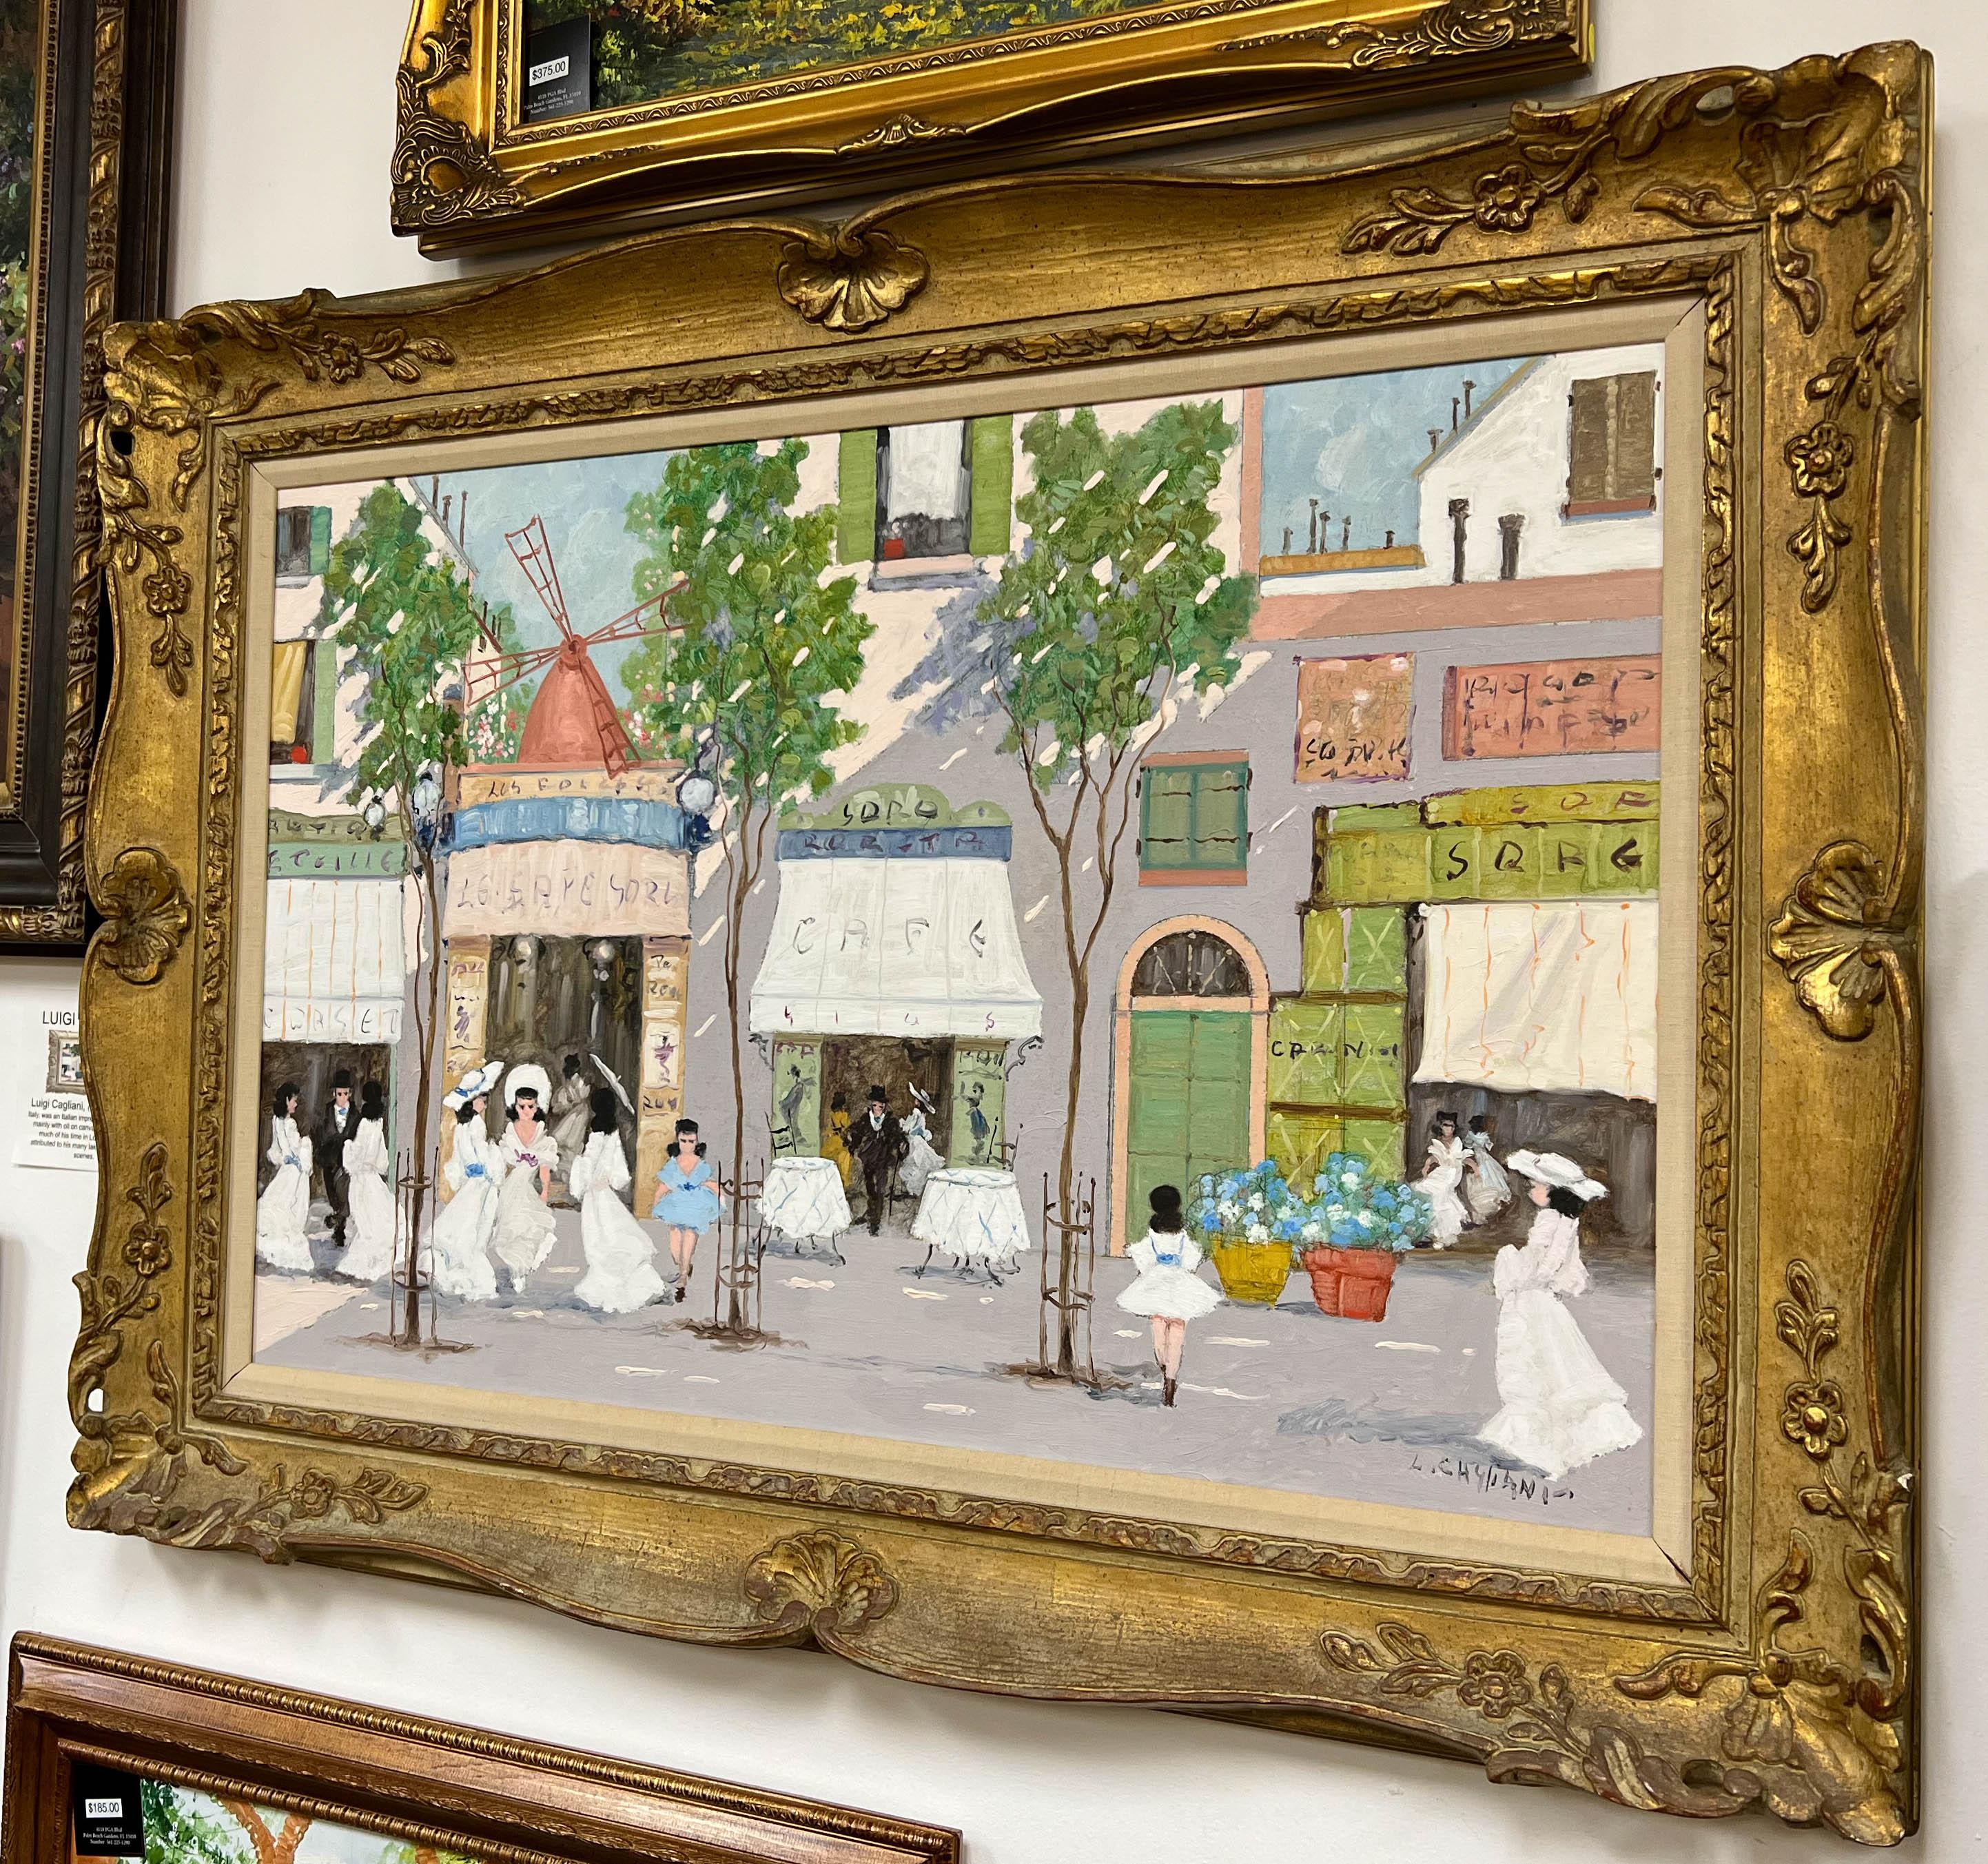 Cette huile sur toile de Luigi Cagliani (1910-1987) représentant une scène de rue parisienne est dans un état de conservation impressionnant. Avec un mouvement romantique, presque du 19ème siècle, Cagliani présente une peinture à l'huile fantaisiste